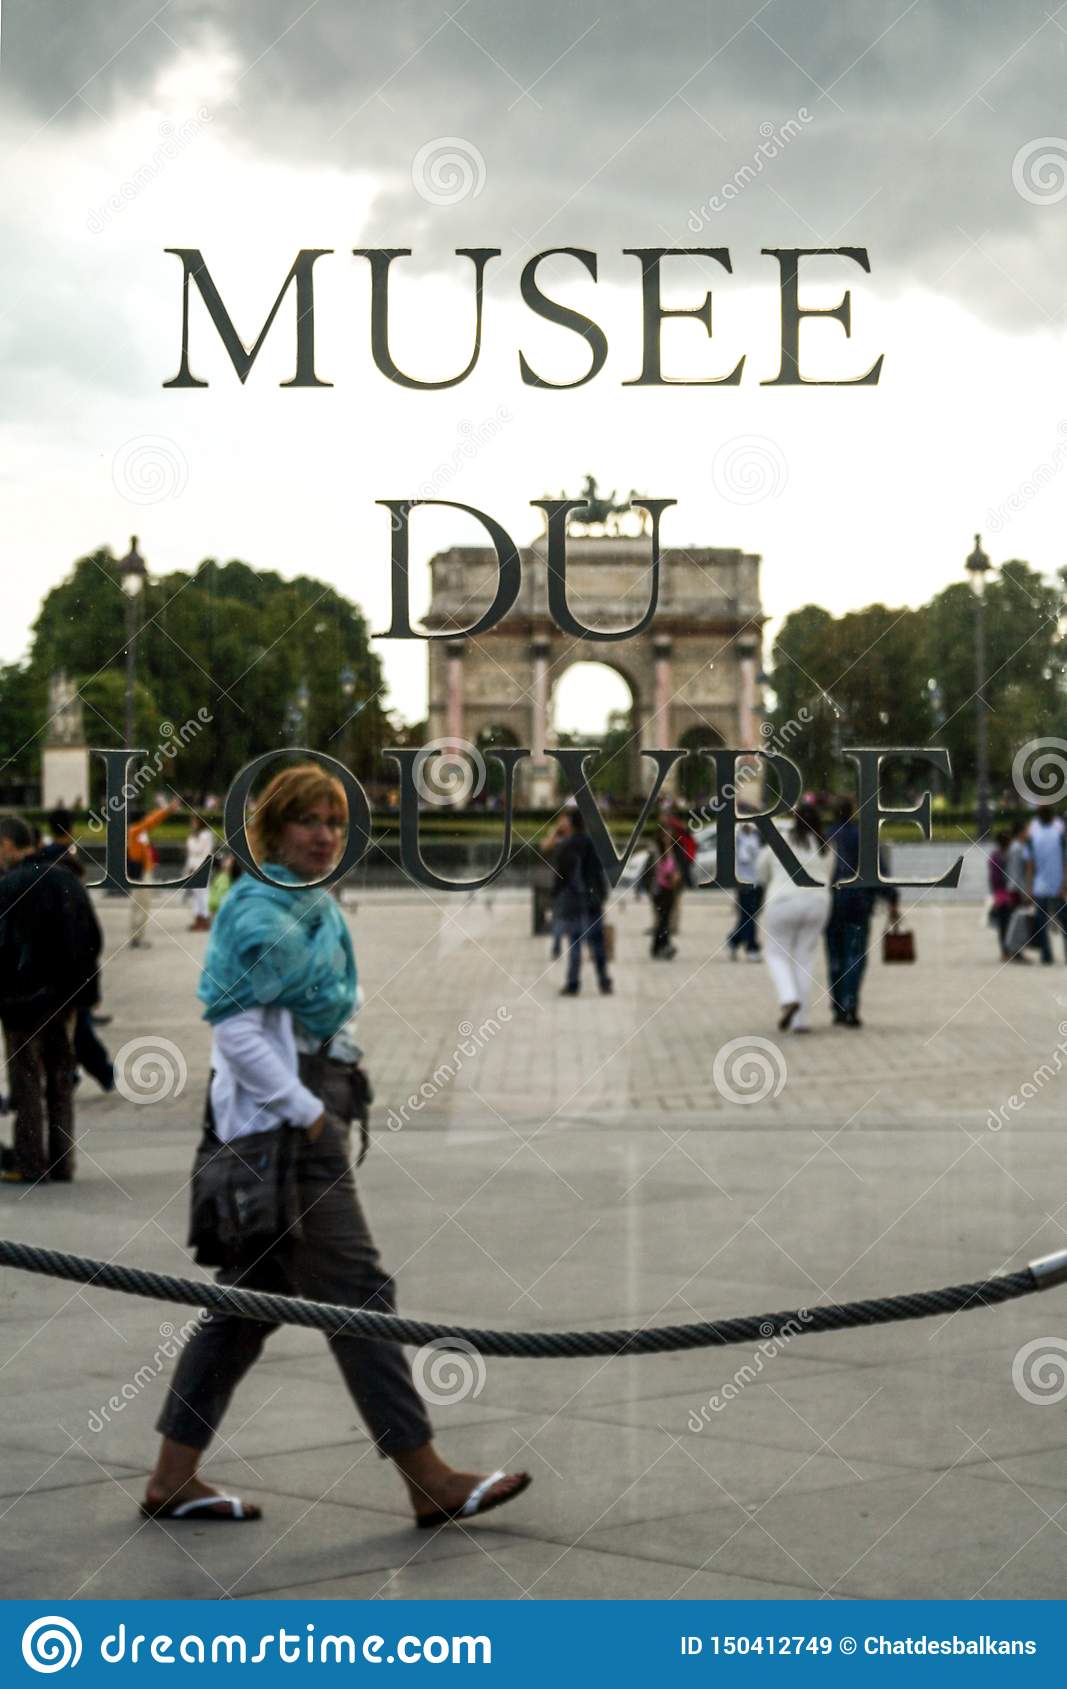 tourist passing behind logo louvre museum musee du louvre front jardin des tuileries garden paris france july